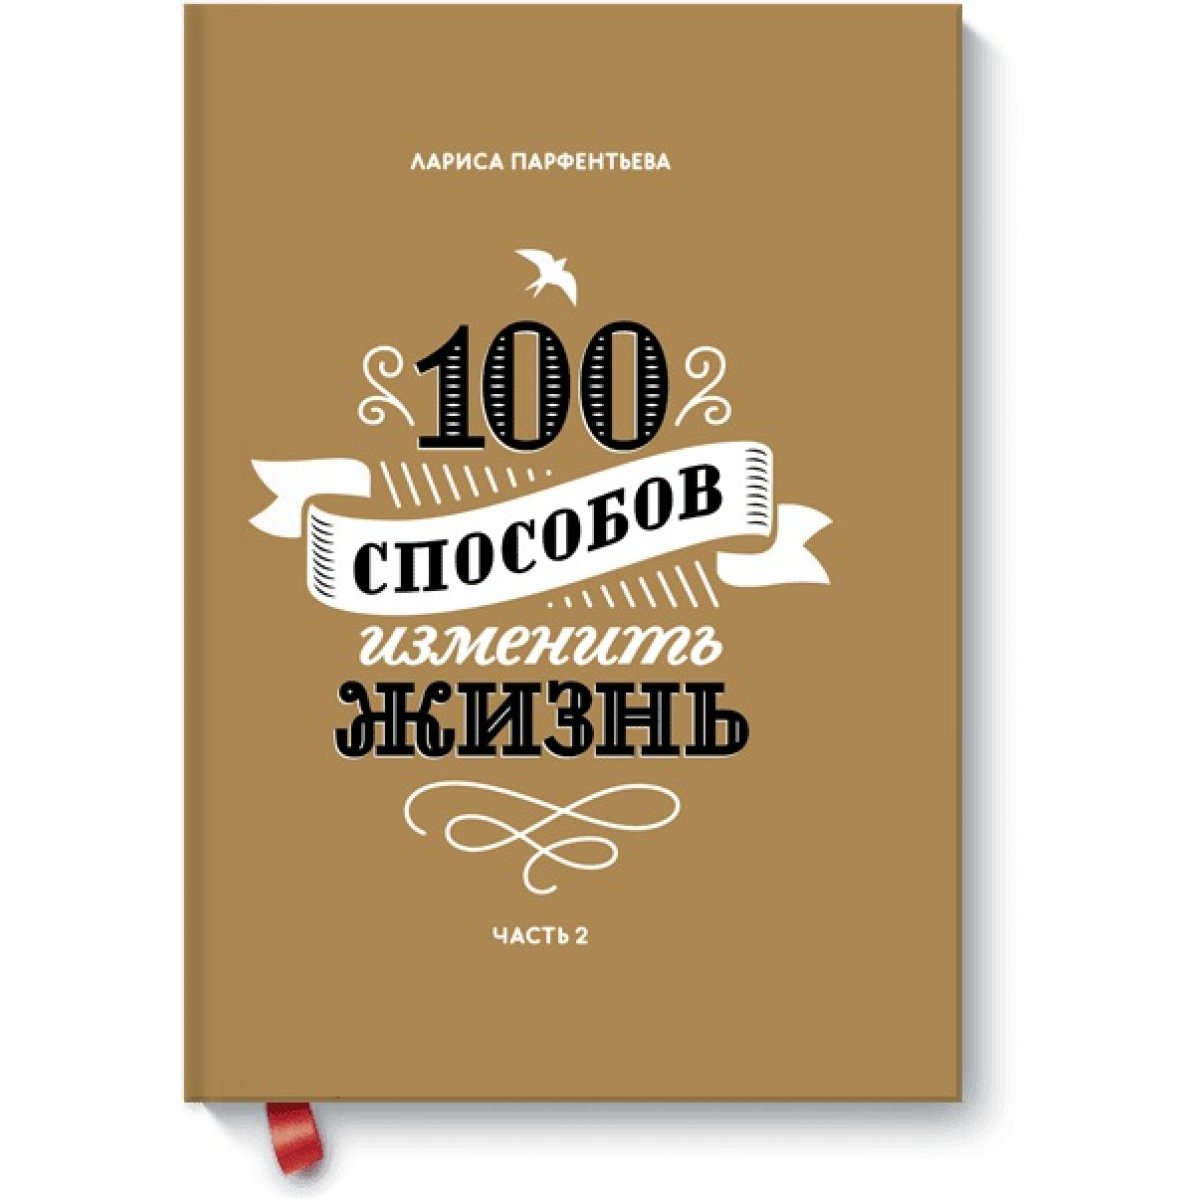 Способов изменить жизнь. Парфентьева 100 способов. Книга 100 способов изменить жизнь.